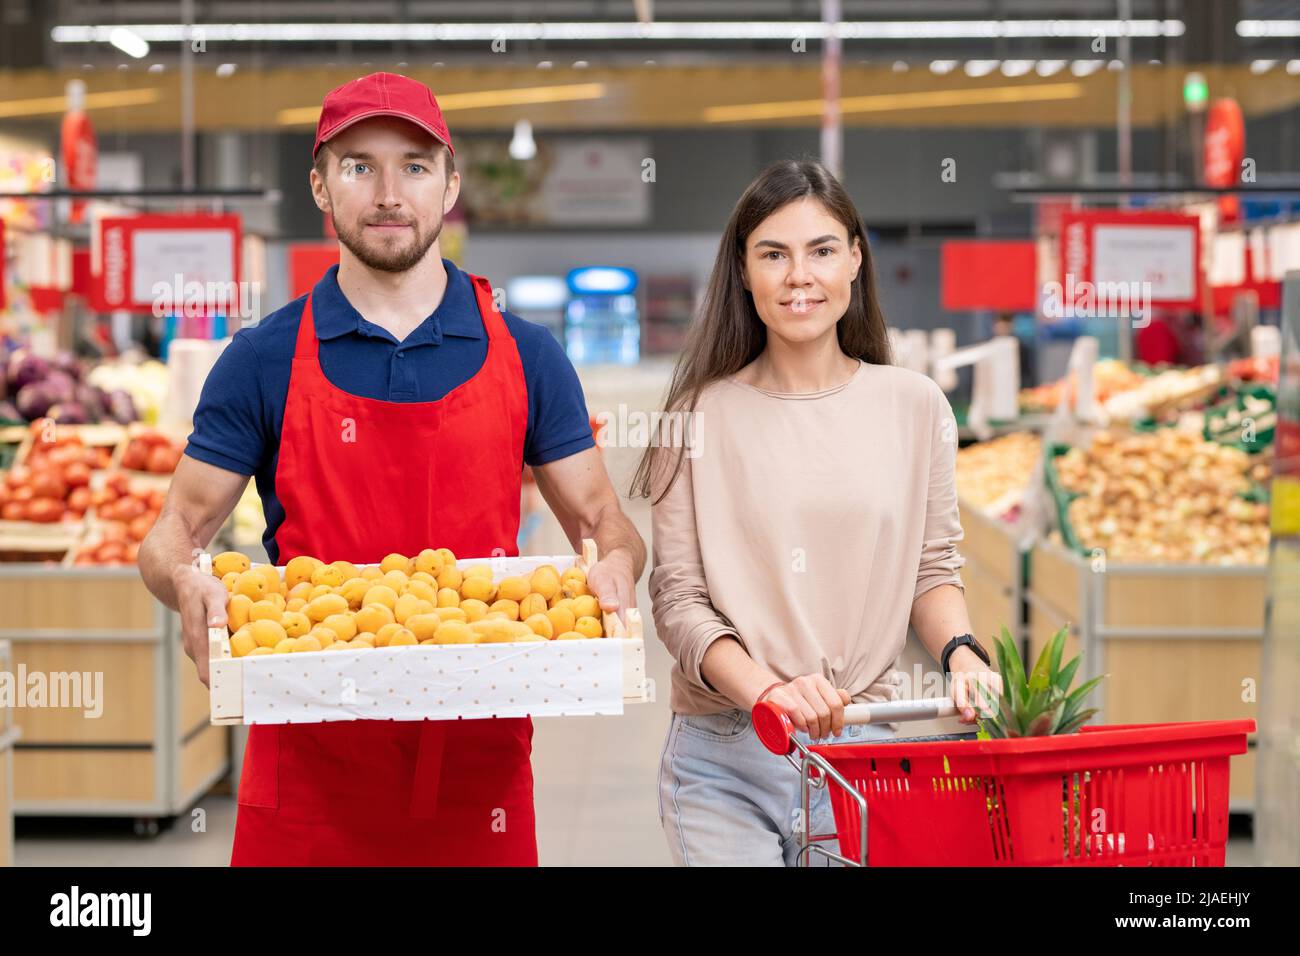 Colpo medio orizzontale di lavoratore maschio che tiene scatola di albicocche stare in piedi con una giovane cliente femminile nella corsia del supermercato Foto Stock